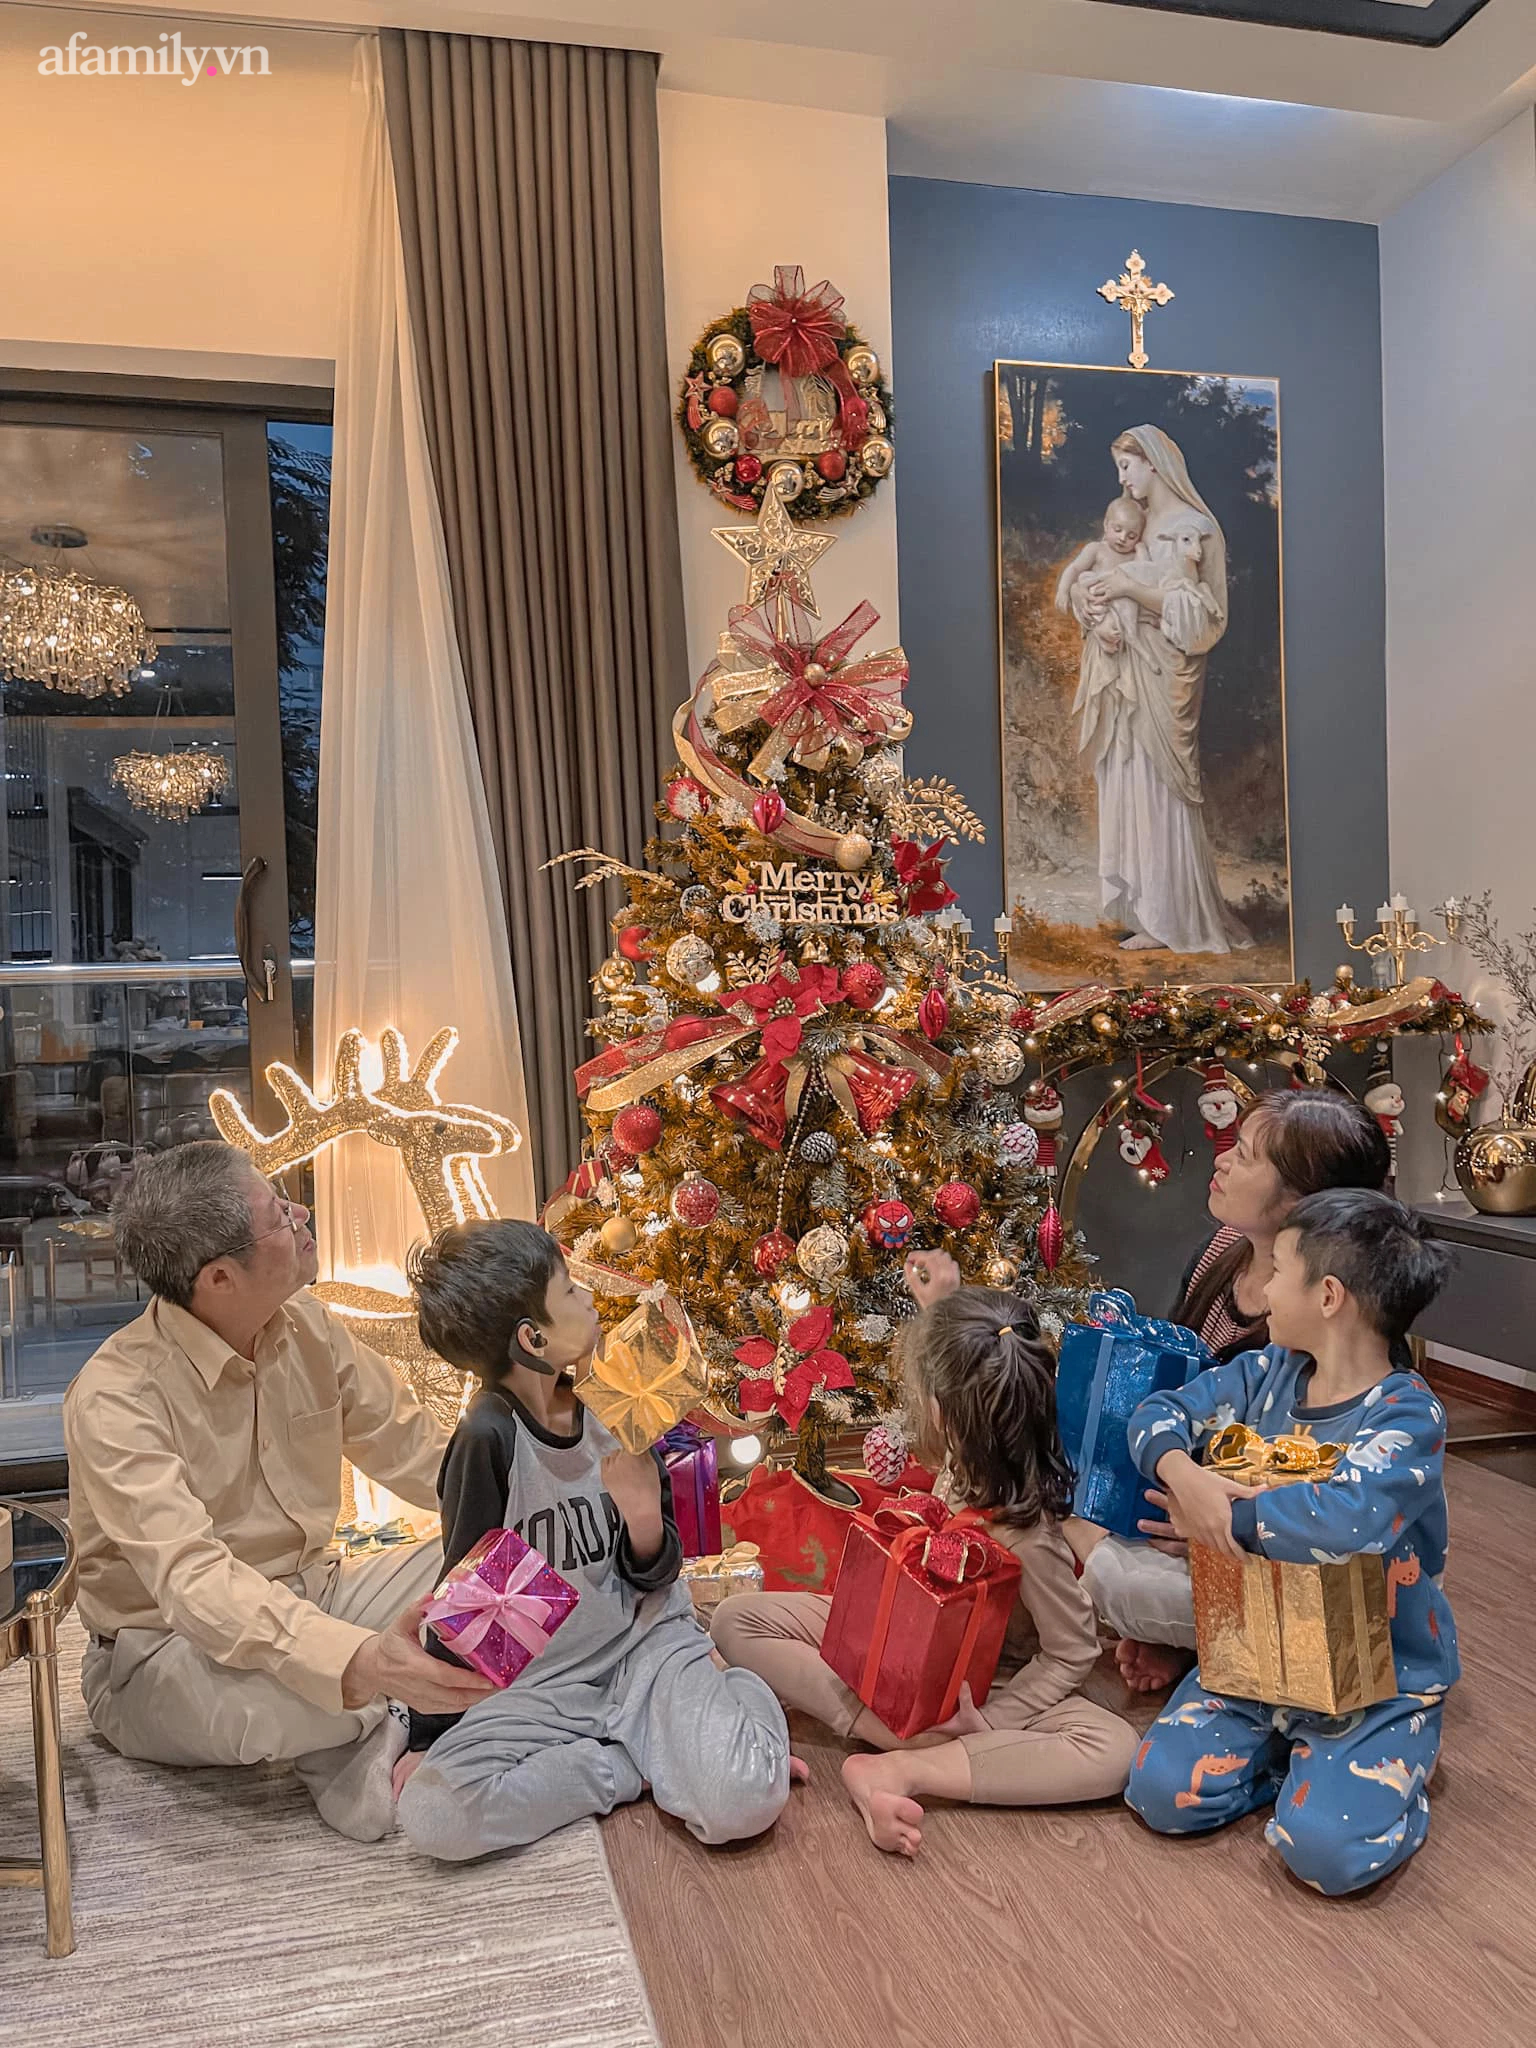 Trang trí nhà đón Giáng sinh ấm cúng của gia đình 3 thế hệ ở Hà Nội, chi phí 10 triệu đồng - Ảnh 10.